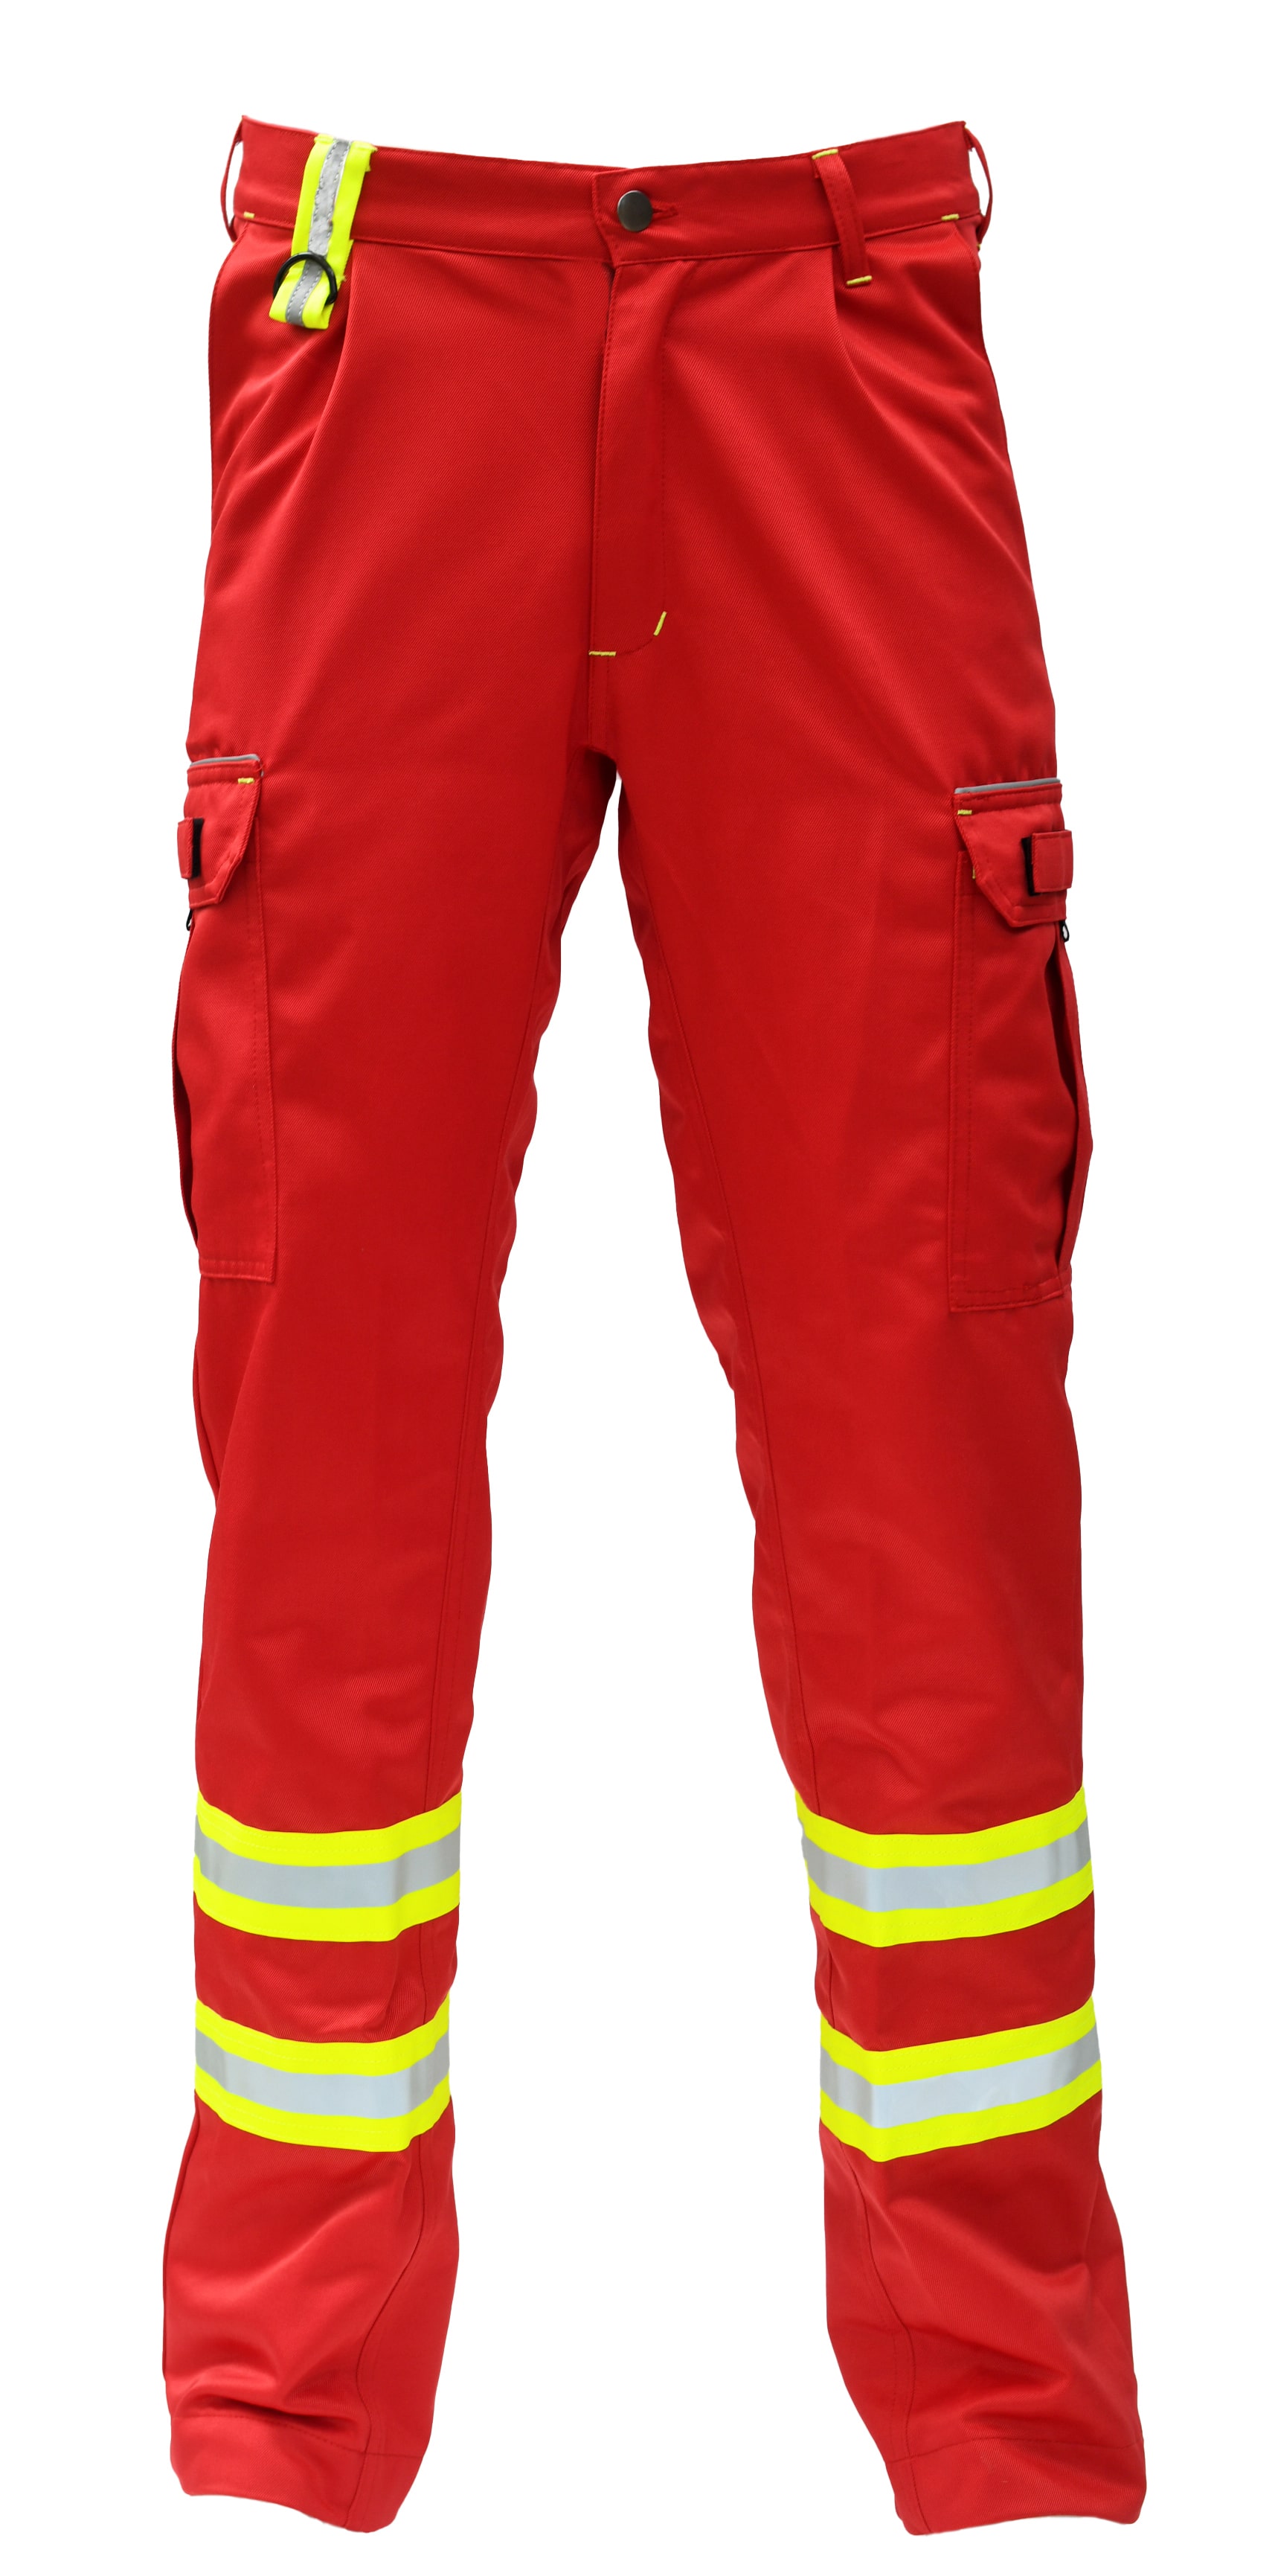 Rescuewear Unisex Hose 33455HT Wasserrettung mit HT-Liner Rot